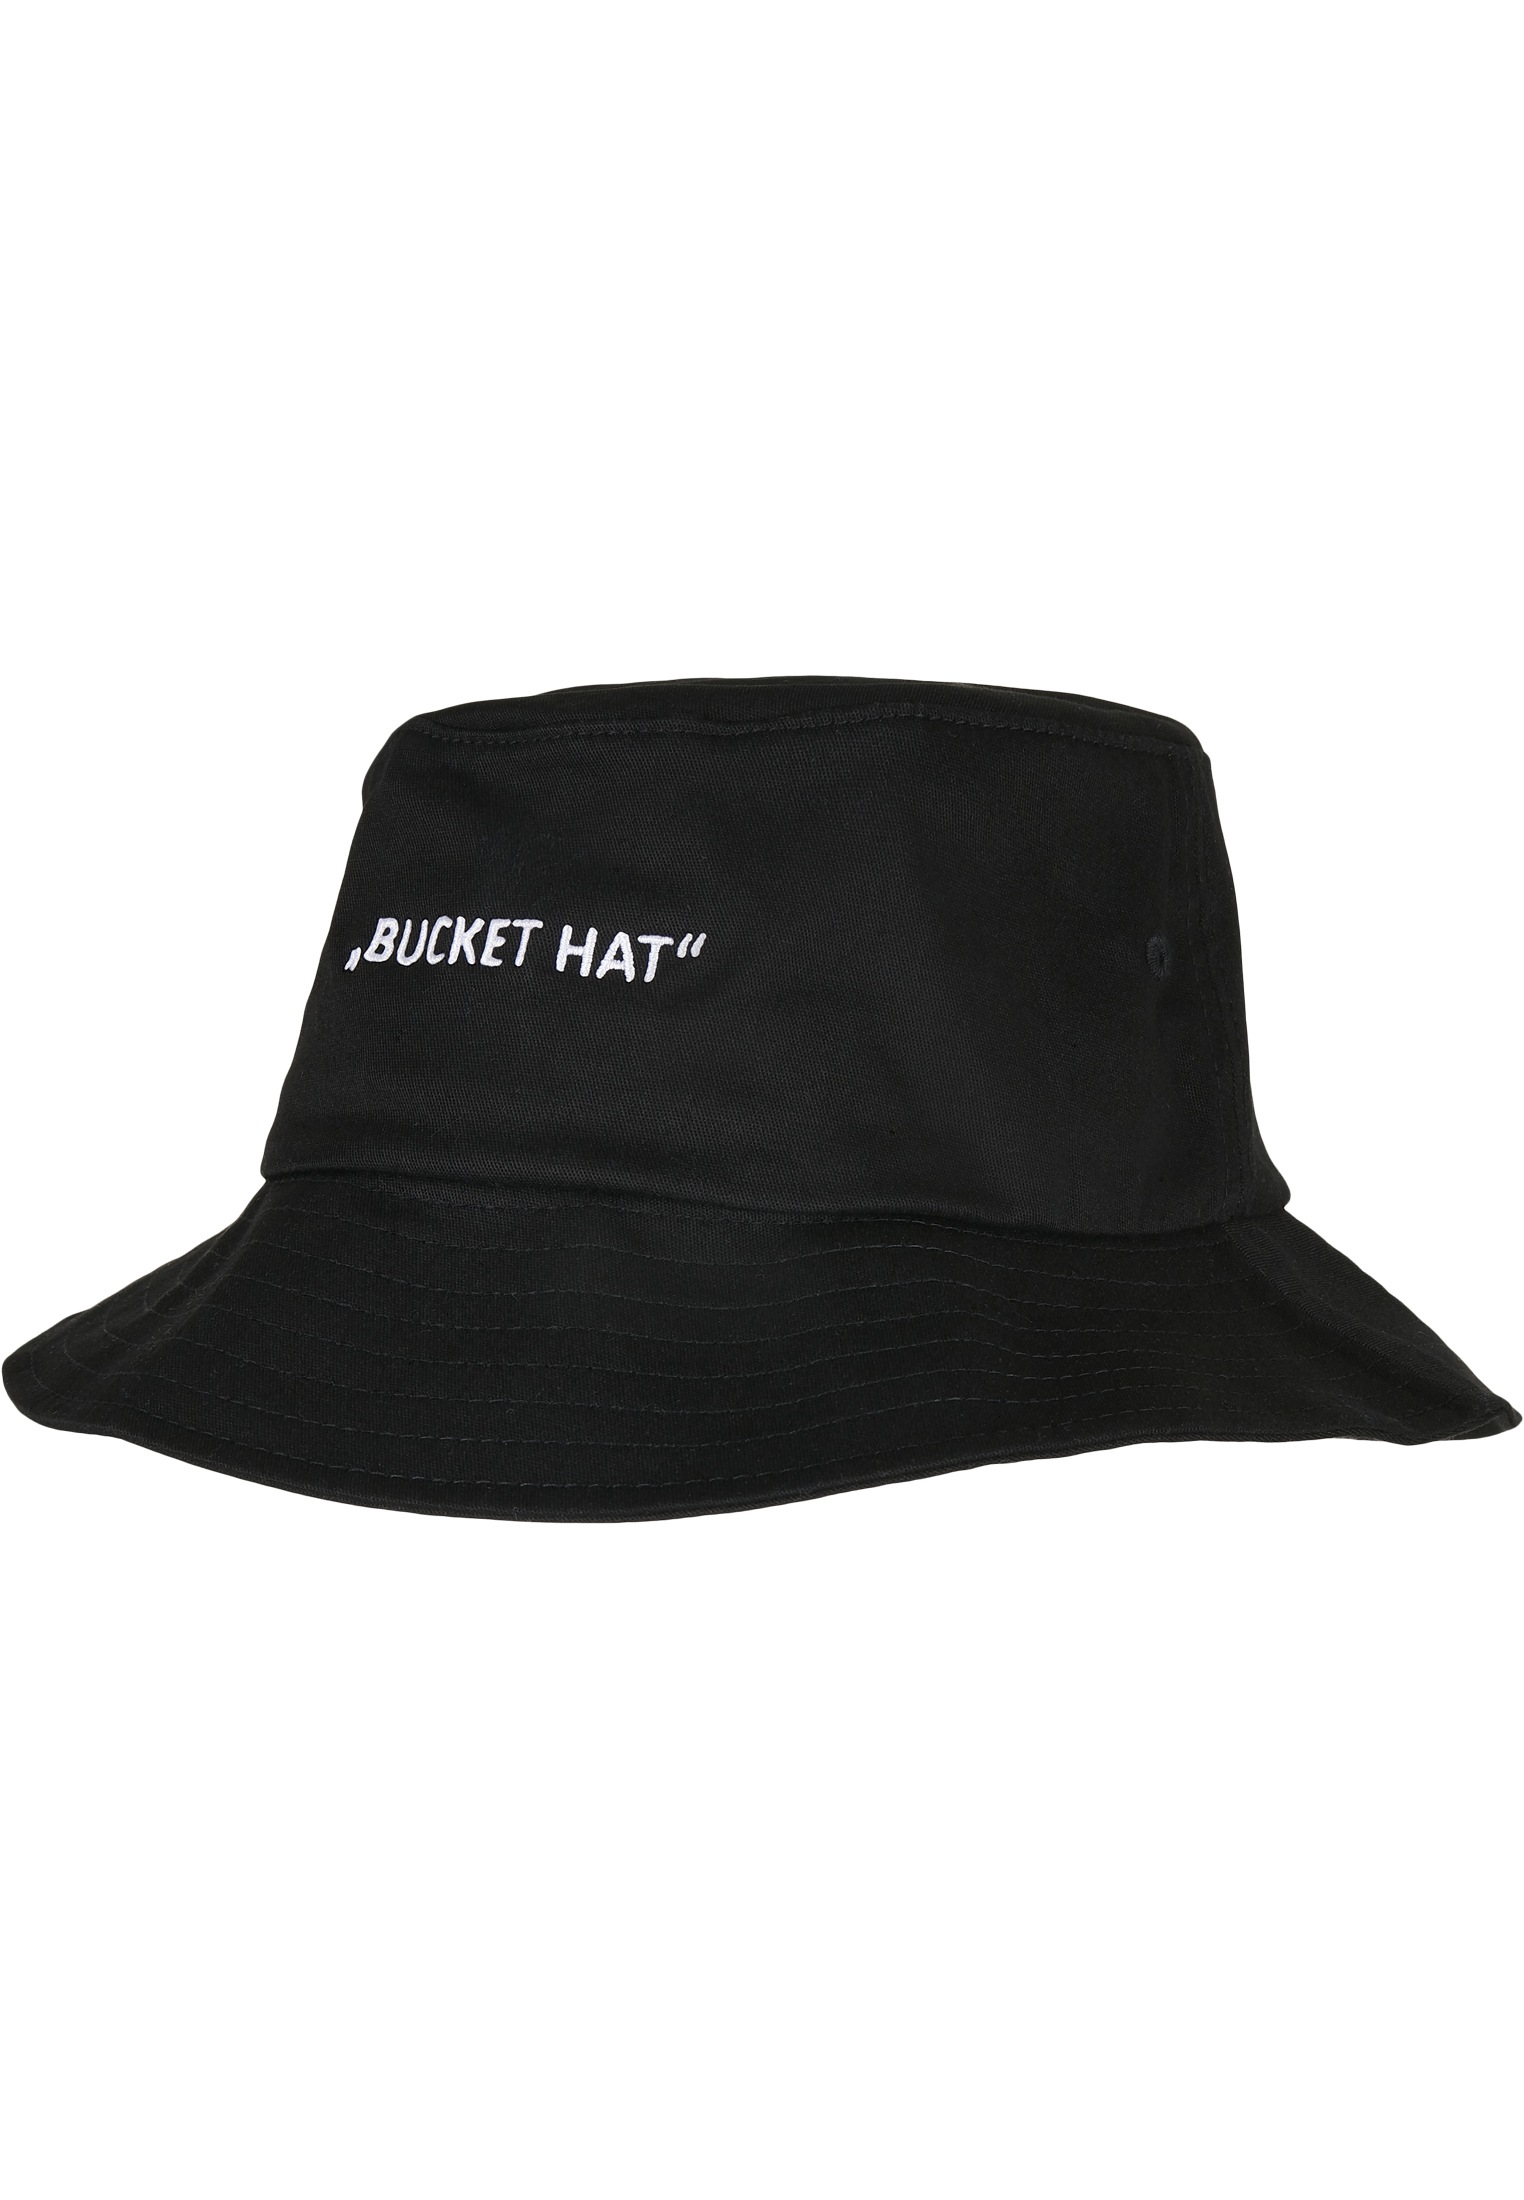 MisterTee Lettered Hat Accessoires Flex Cap Bucket